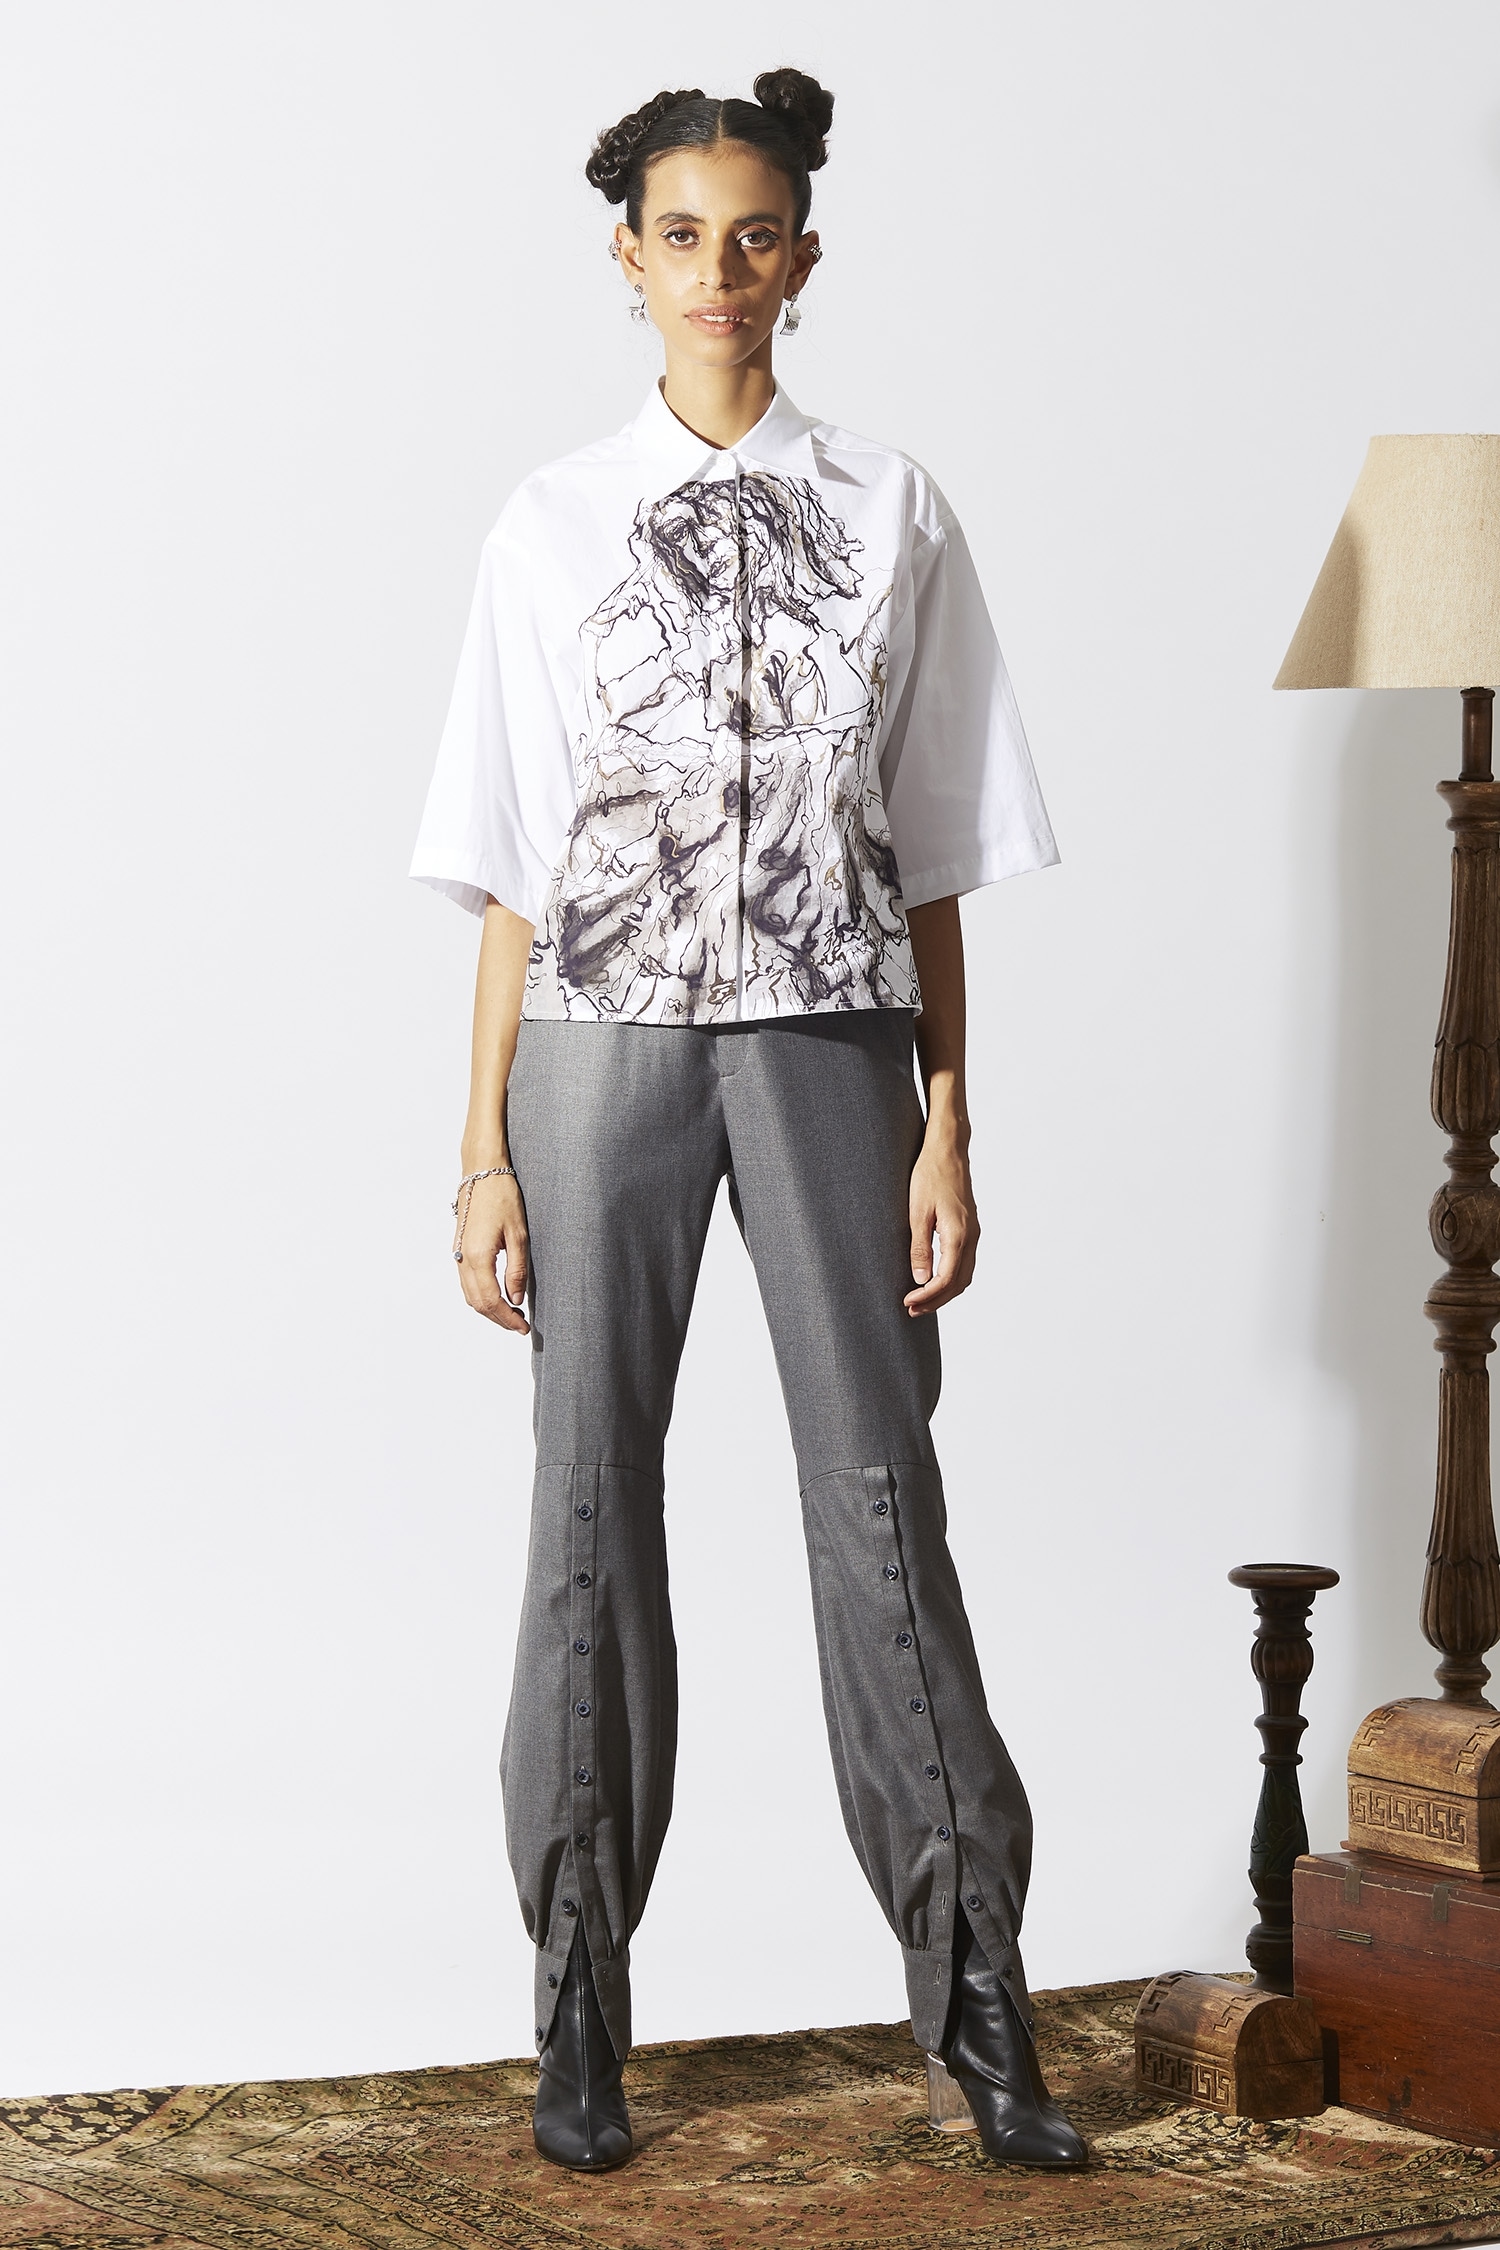 Buy Grey Trousers  Pants for Men by VAN HEUSEN Online  Ajiocom